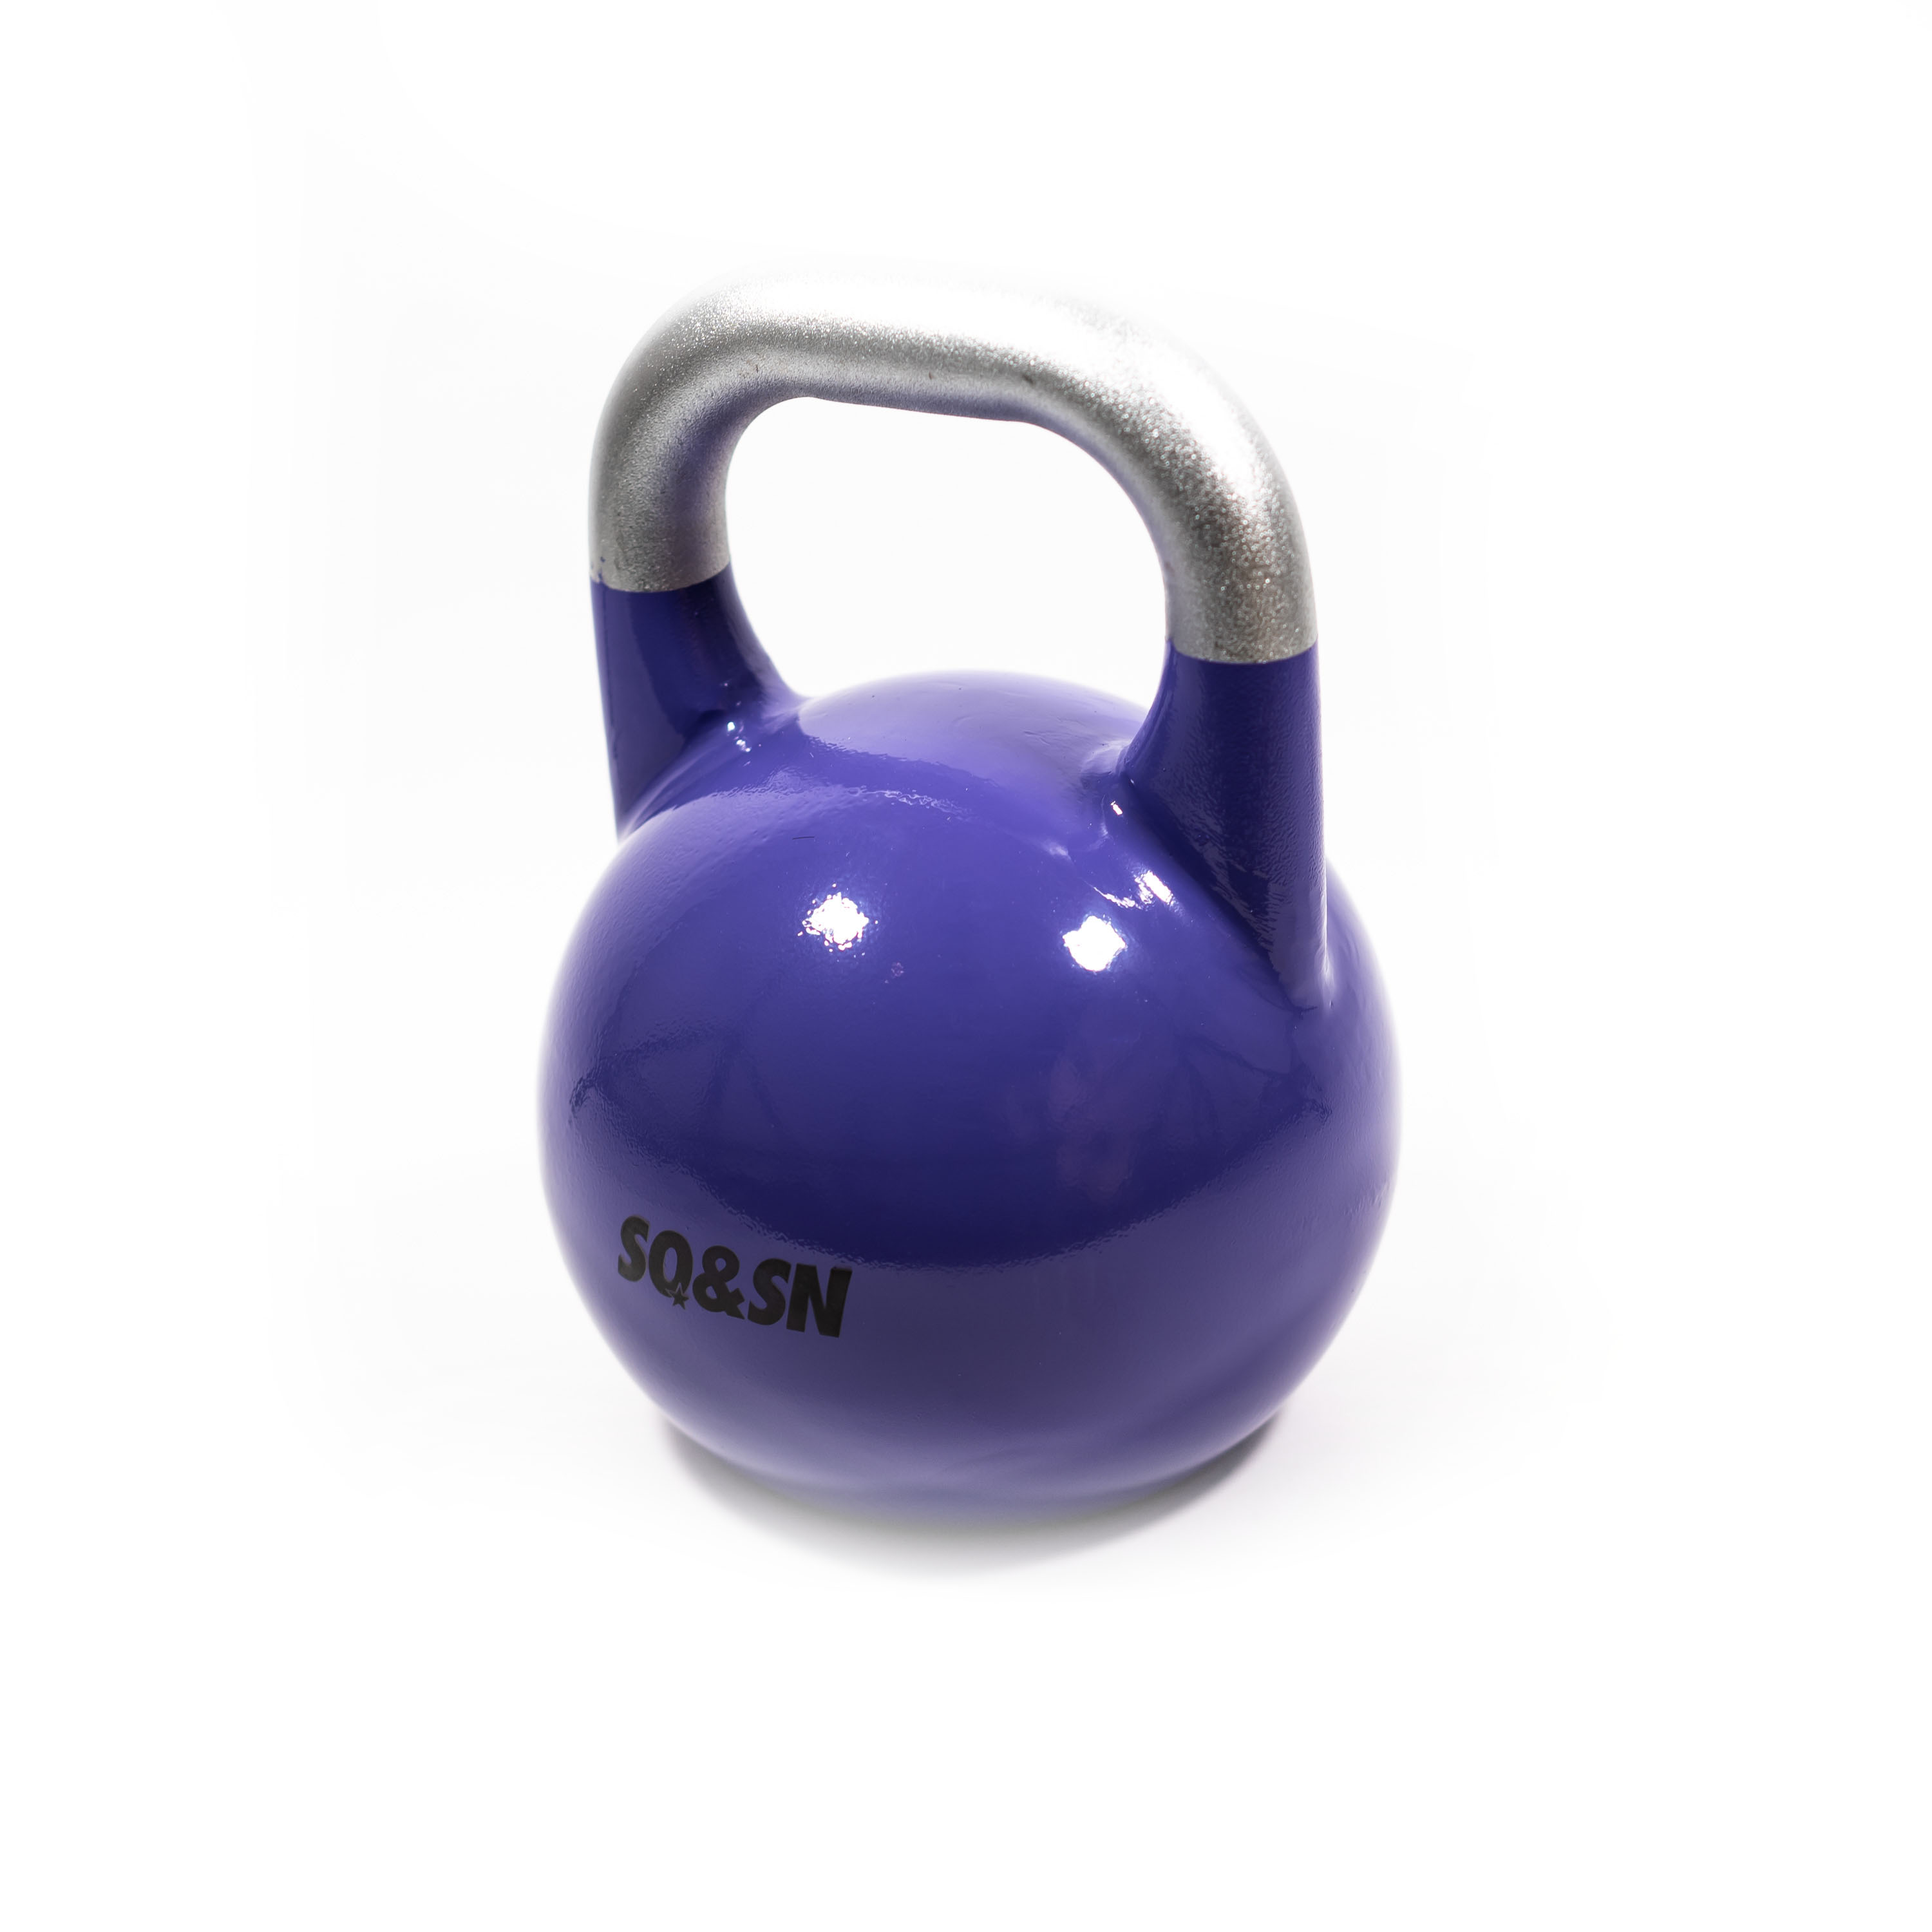 Brug SQ&SN Competition Kettlebell (20 kg) i støbejern. Udstyr til crossfit træning, styrketræning og funktionel træning til en forbedret oplevelse